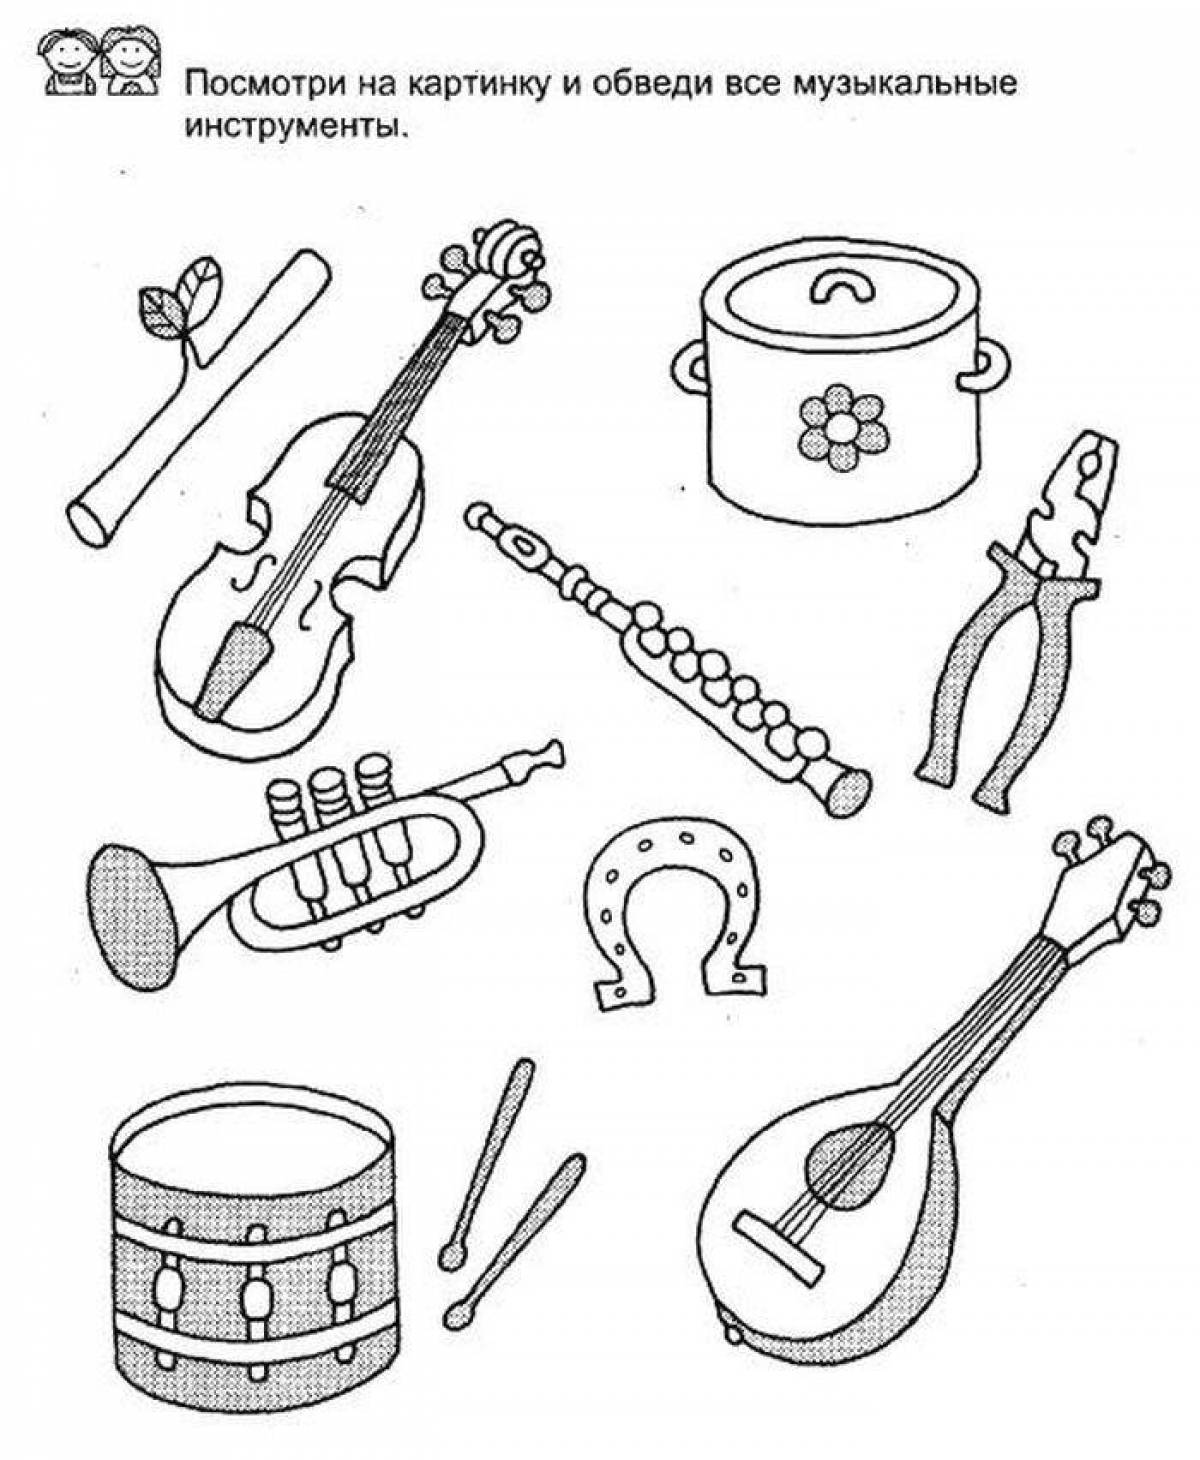 Музыкальные инструменты задачи. Музыкальные инструменты задания. Музыкальные инструменты задания для детей. Инструменты задания для детей. Муз инструменты задания для дошкольников.